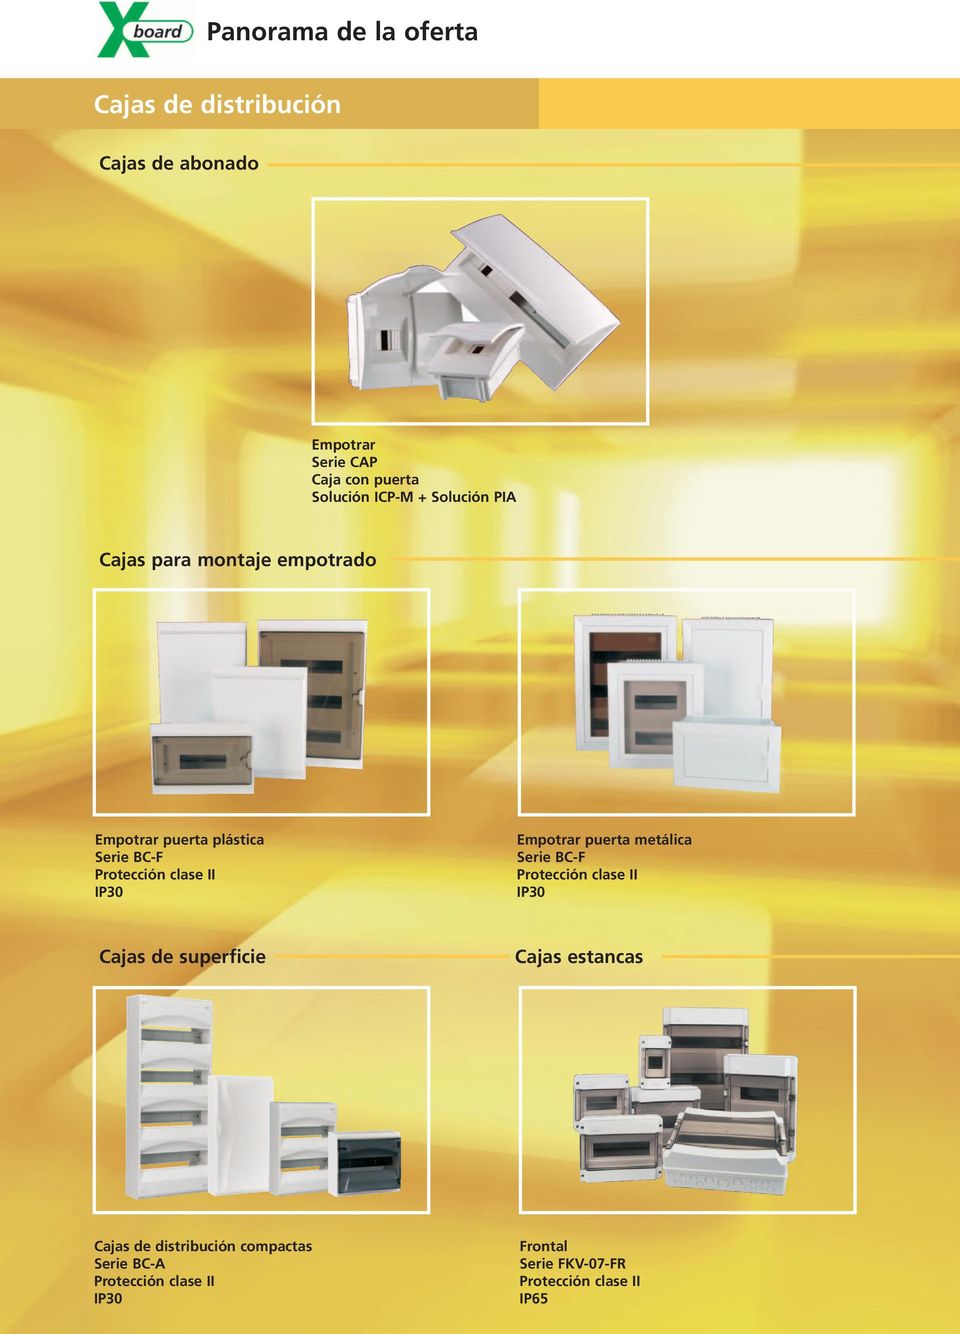 IP30 Empotrar puerta metálica Serie BC-F Protección clase II IP30 Cajas de superficie Cajas estancas Cajas